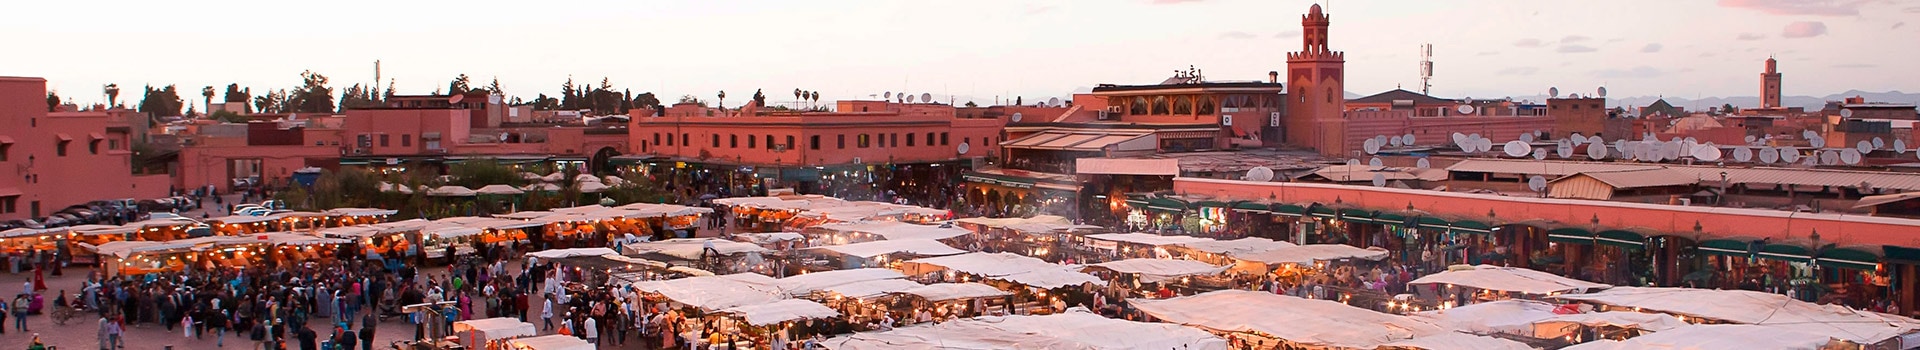 Vigo - Marrakech